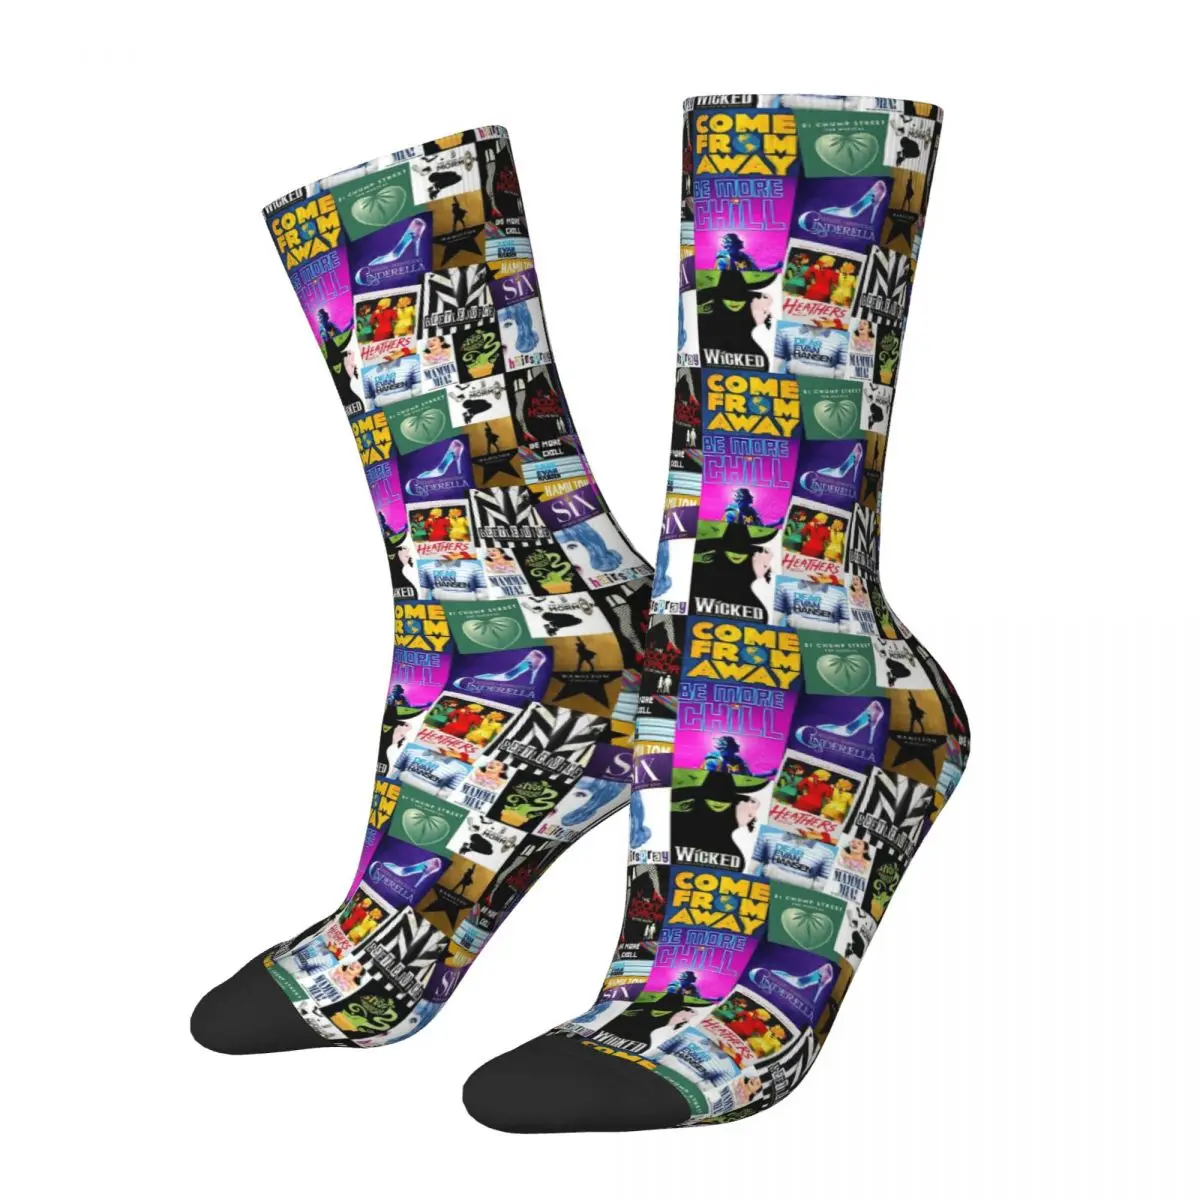 

Новые носки сумасшедшая Мелодия коллаж логотип носки супер мягкие графические женские мужские носки весна лето осень зима идея рождественского подарка